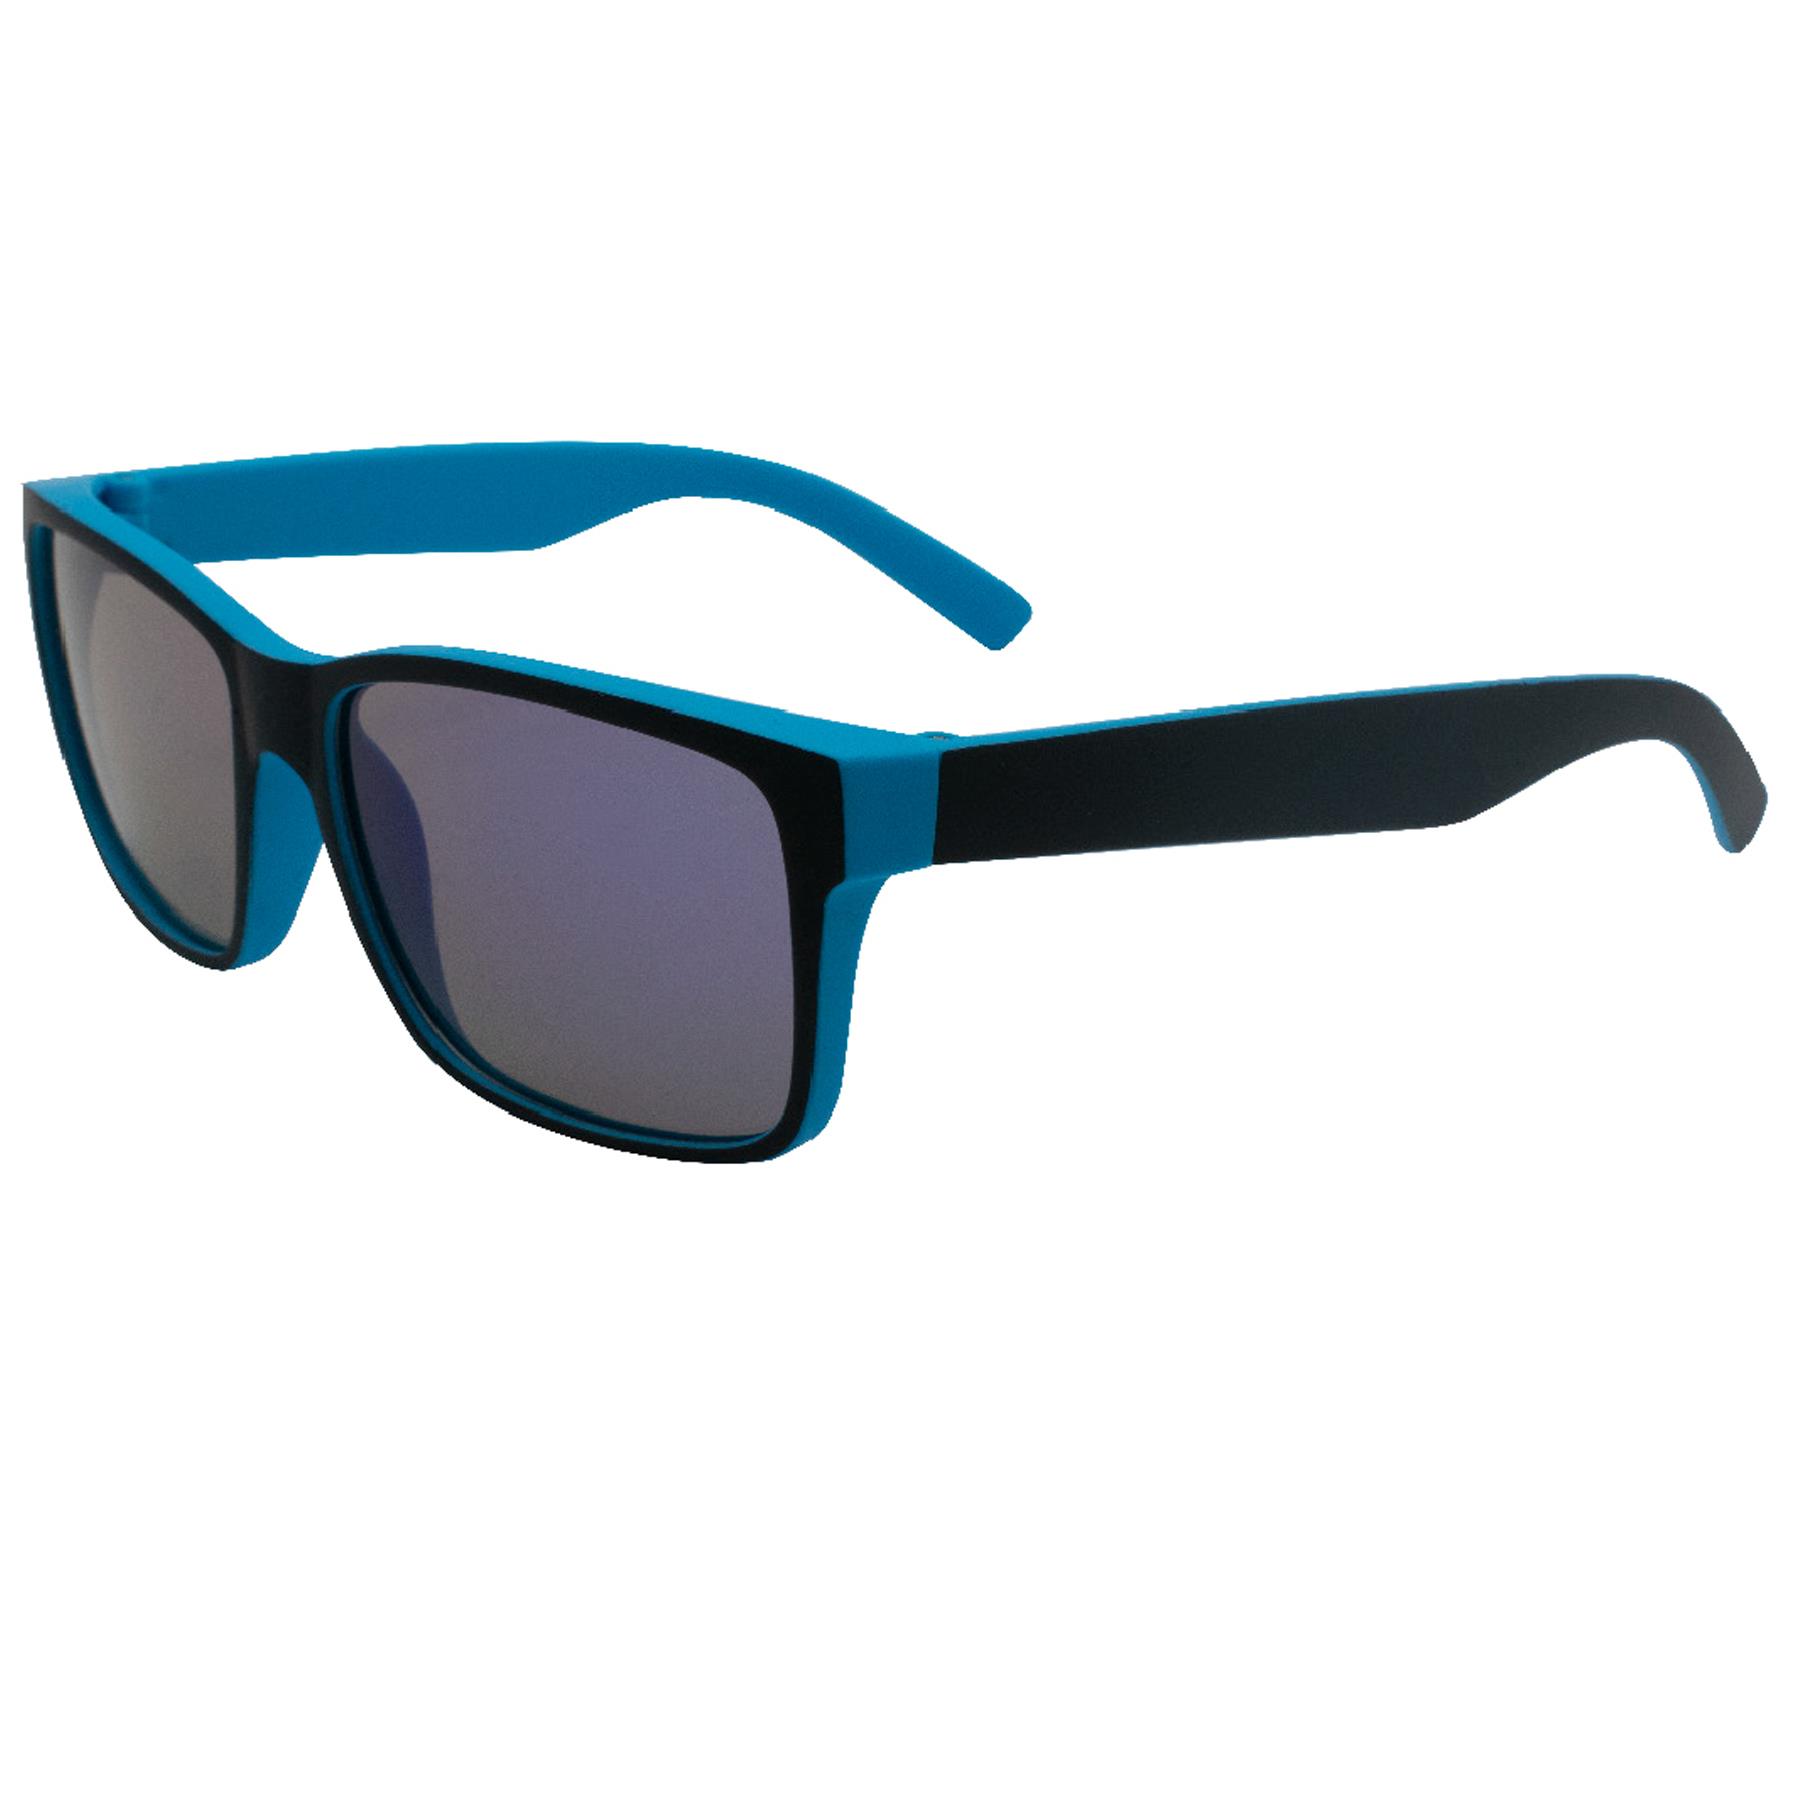 Children's Sunglasses 100% UV protection for Summer Holiday - Plain Blue / Black PRK179